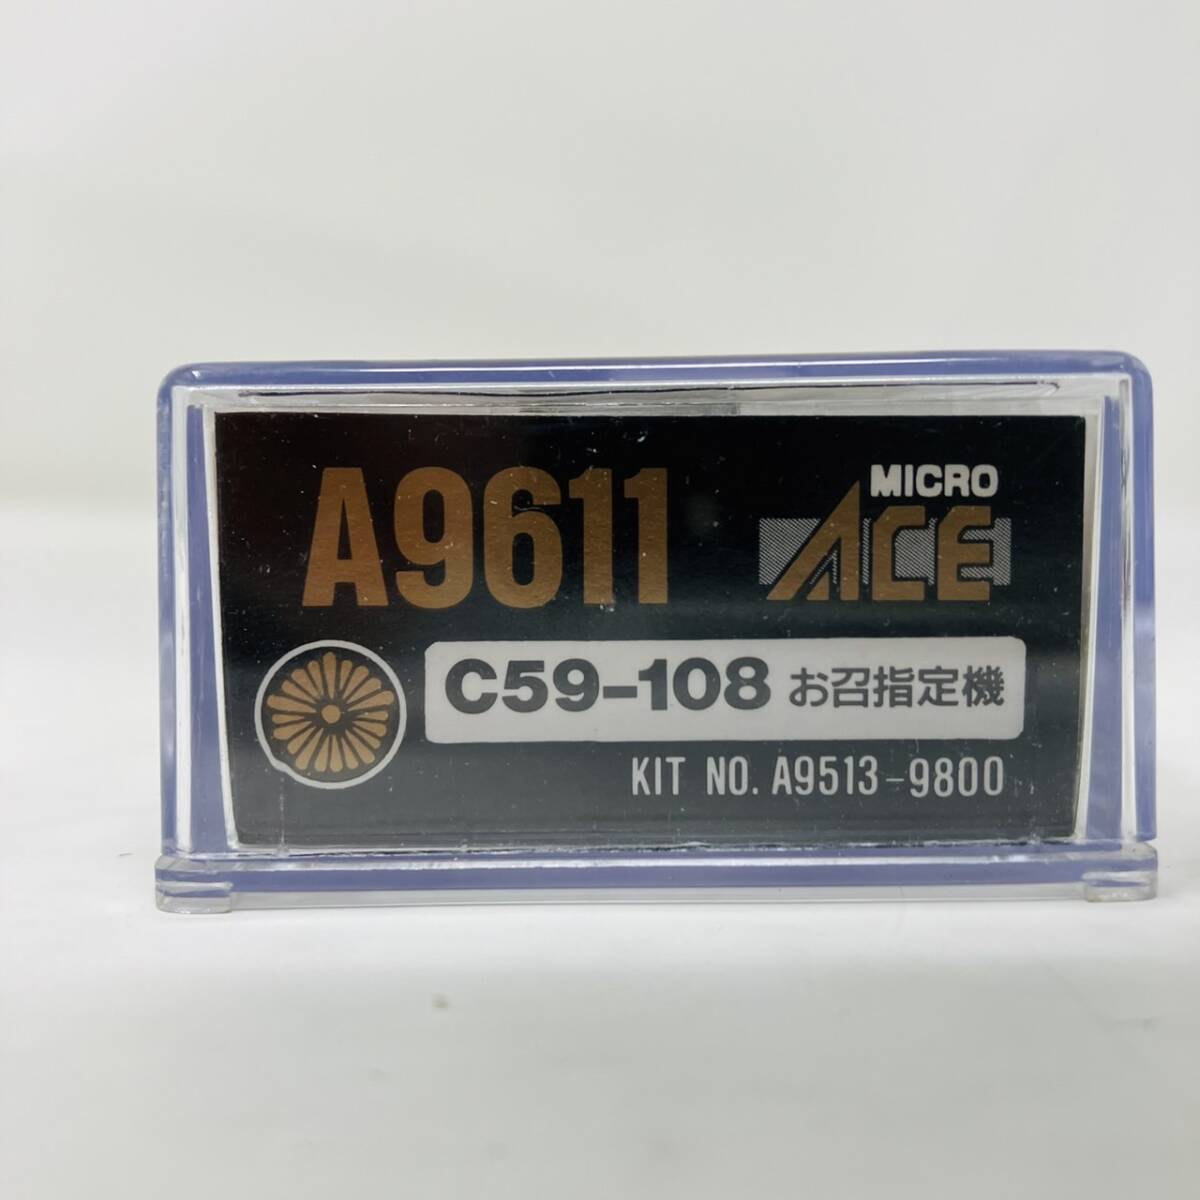 [ текущее состояние товар ] микро Ace A9611 паровоз C-59-108 серийный номер шелковый креп указание машина N gauge железная дорога модель / N-GAUGE MICRO ACE STEAM LOCOMOTIVE